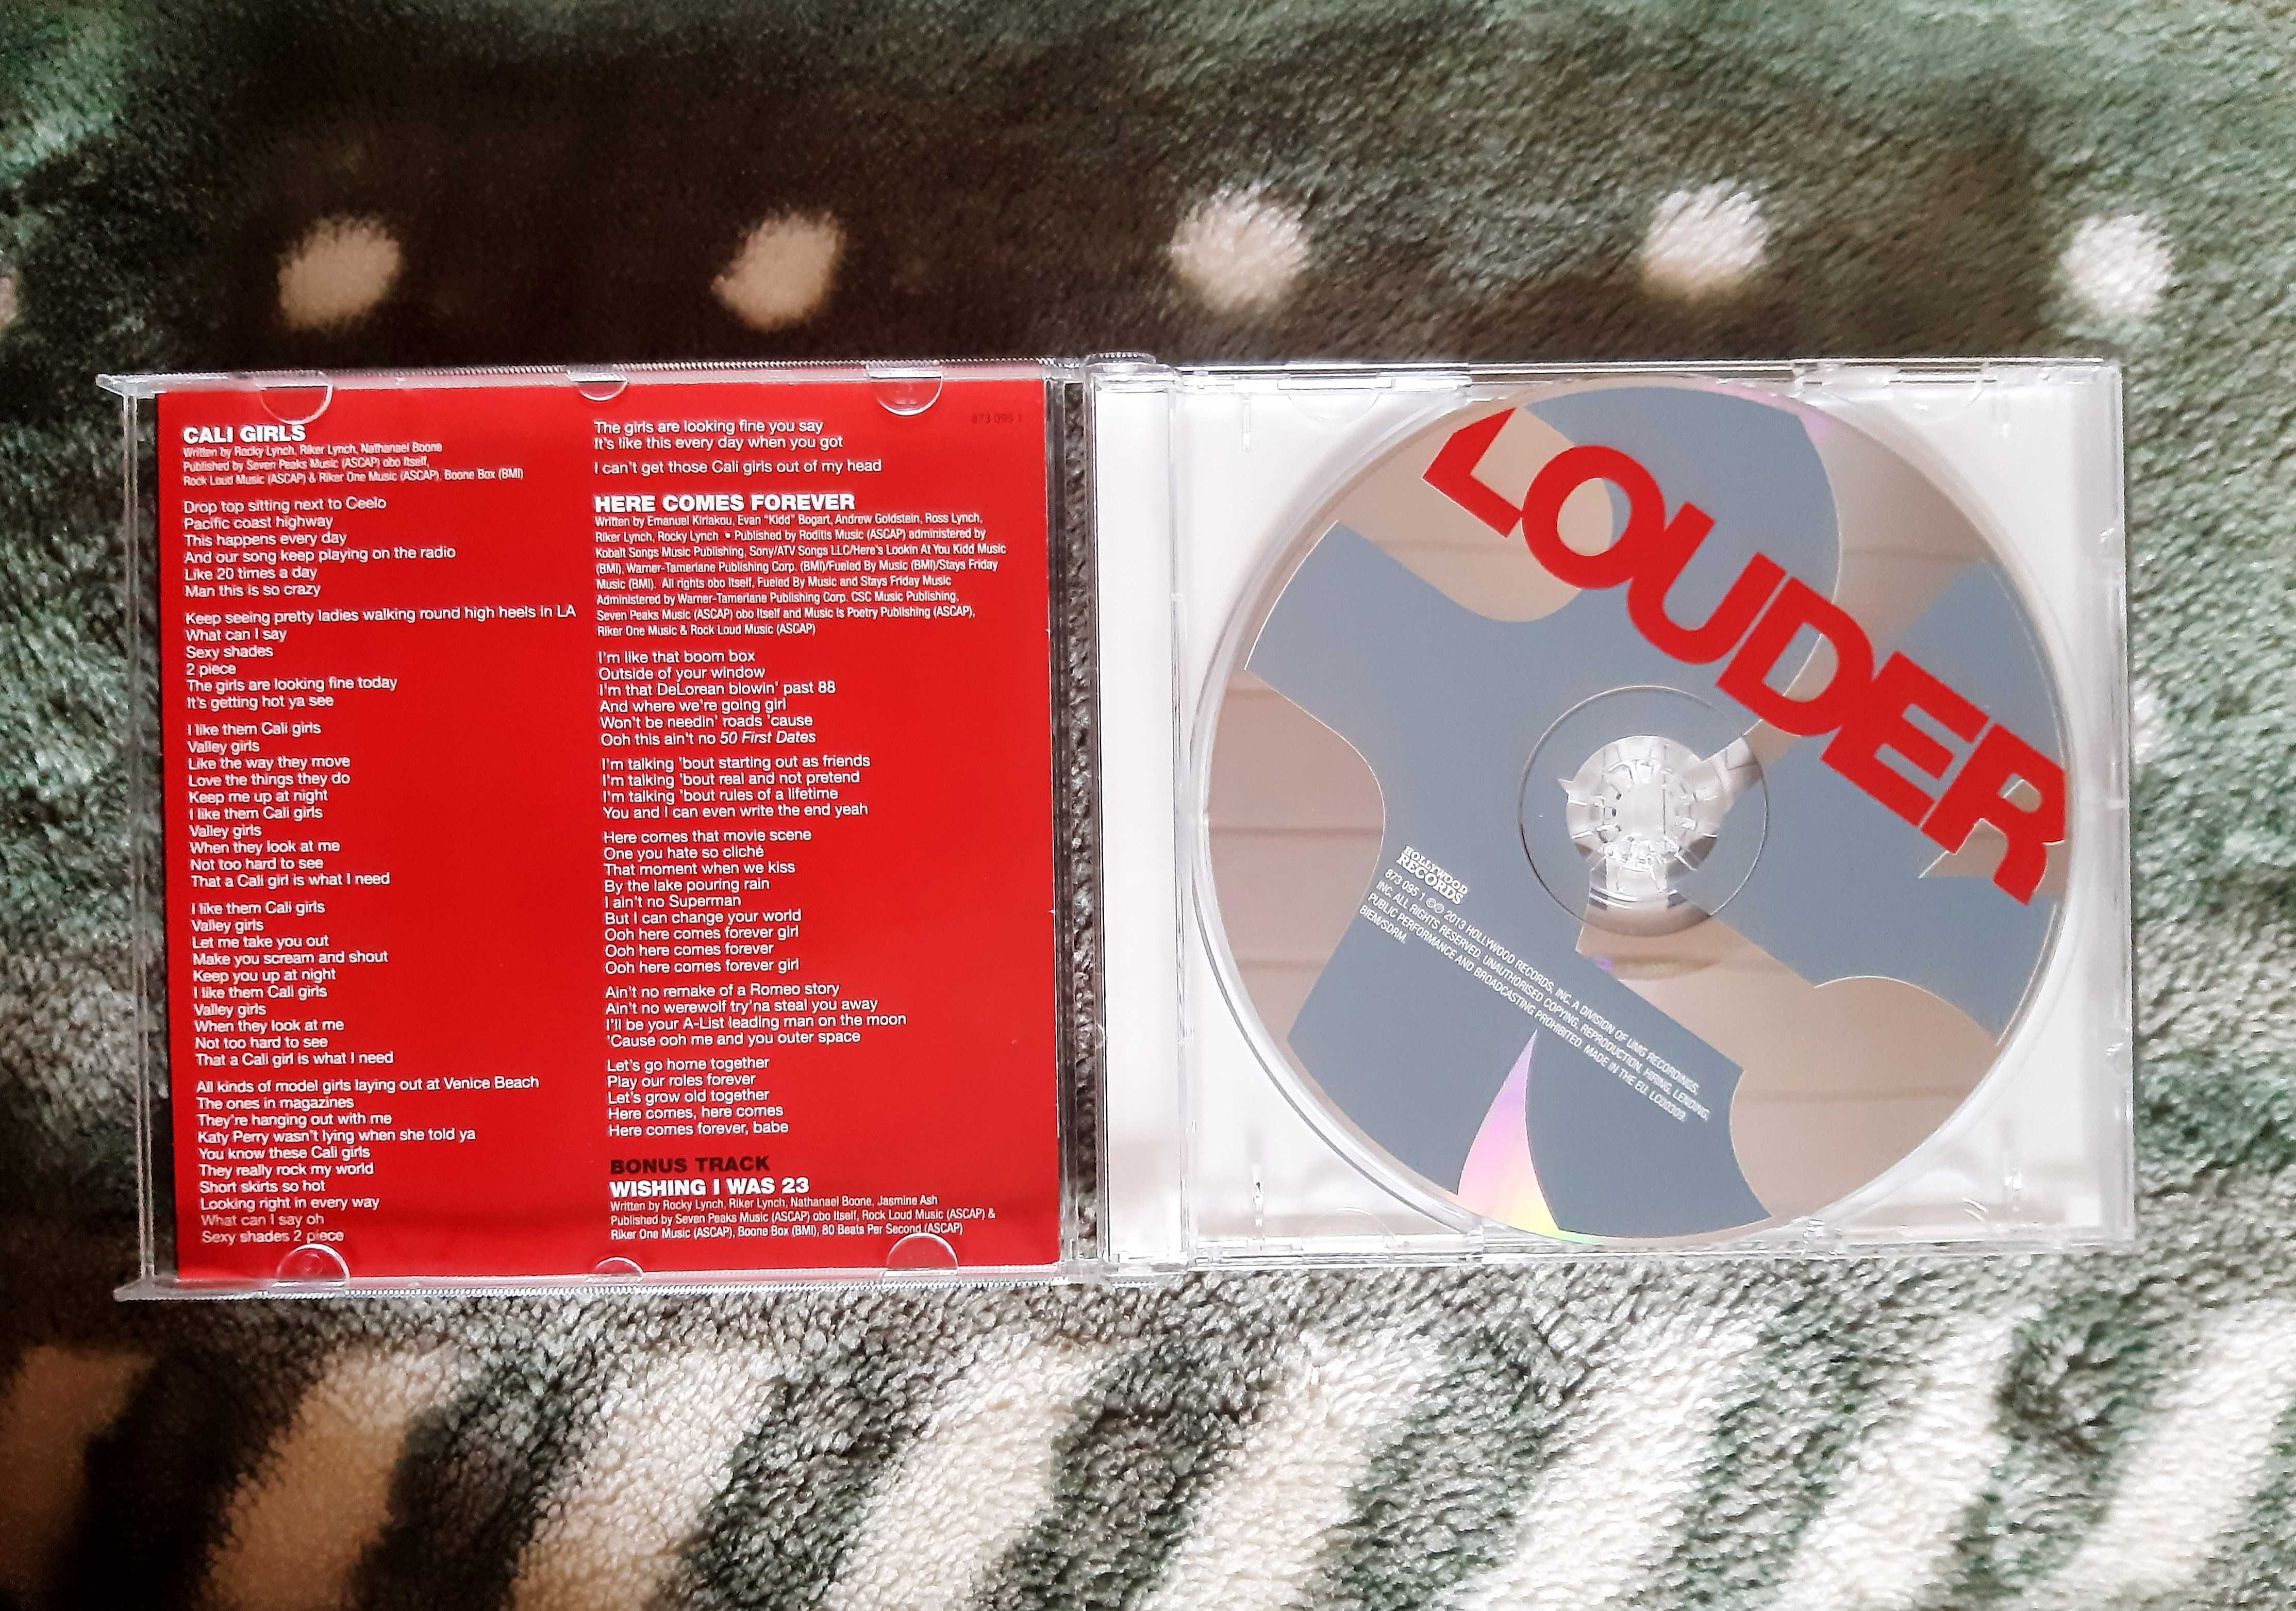 Płyty CD muzyczne wokalista Shawn Mendes Illuminate + zespół R5 Louder